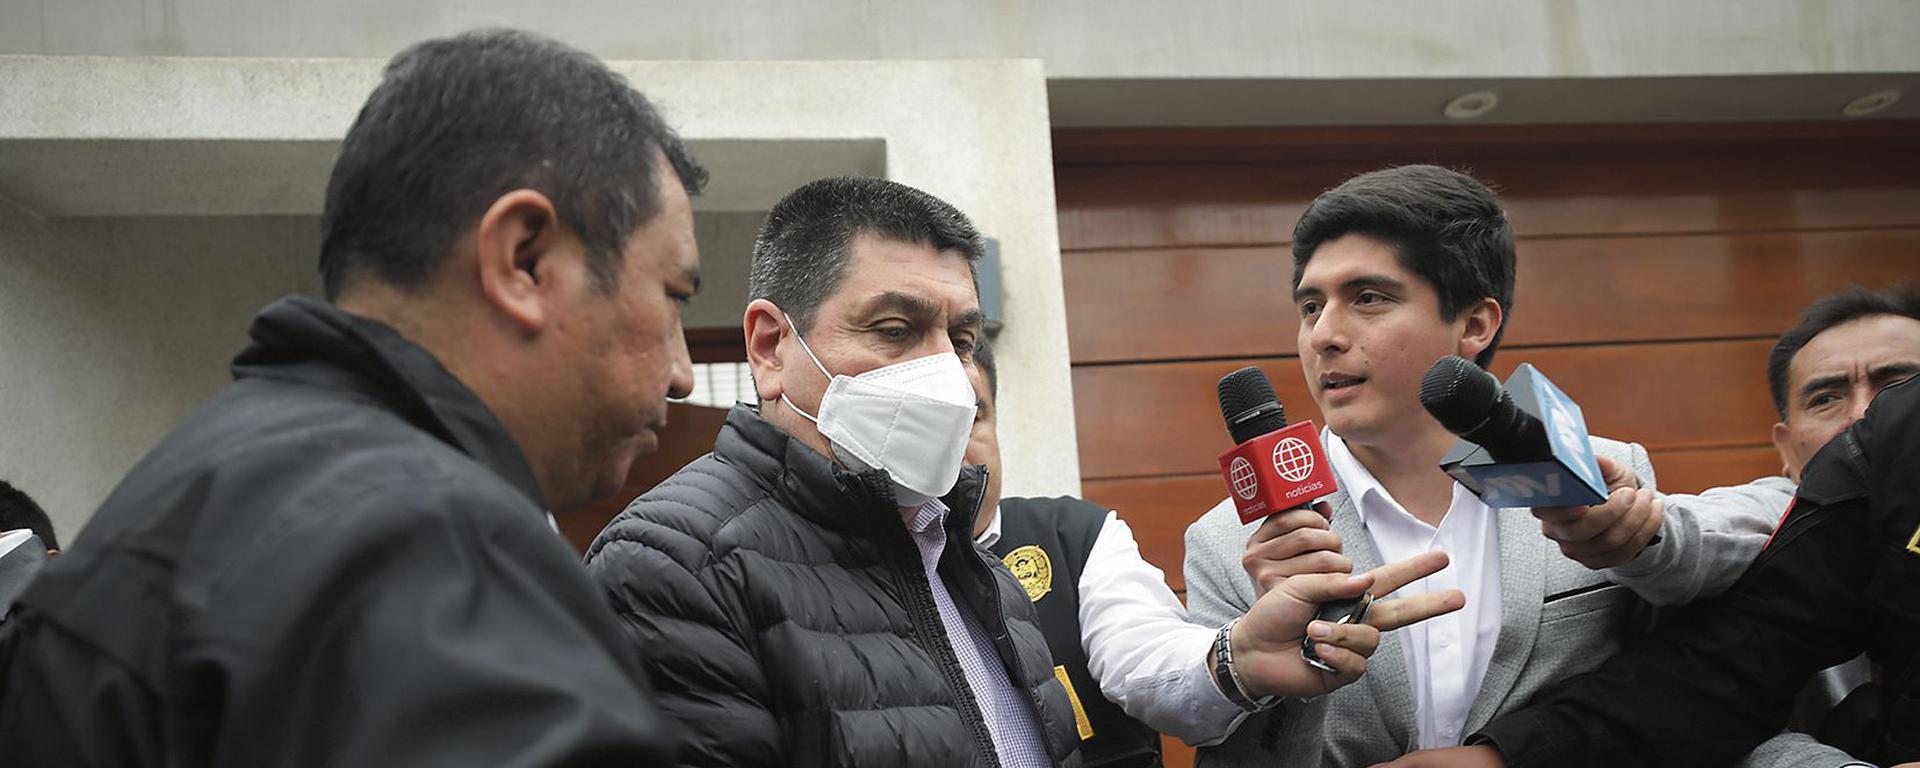 San Isidro: transferencia en pausa por detención de alcalde Cáceres y funcionarios involucrados en organización criminal 